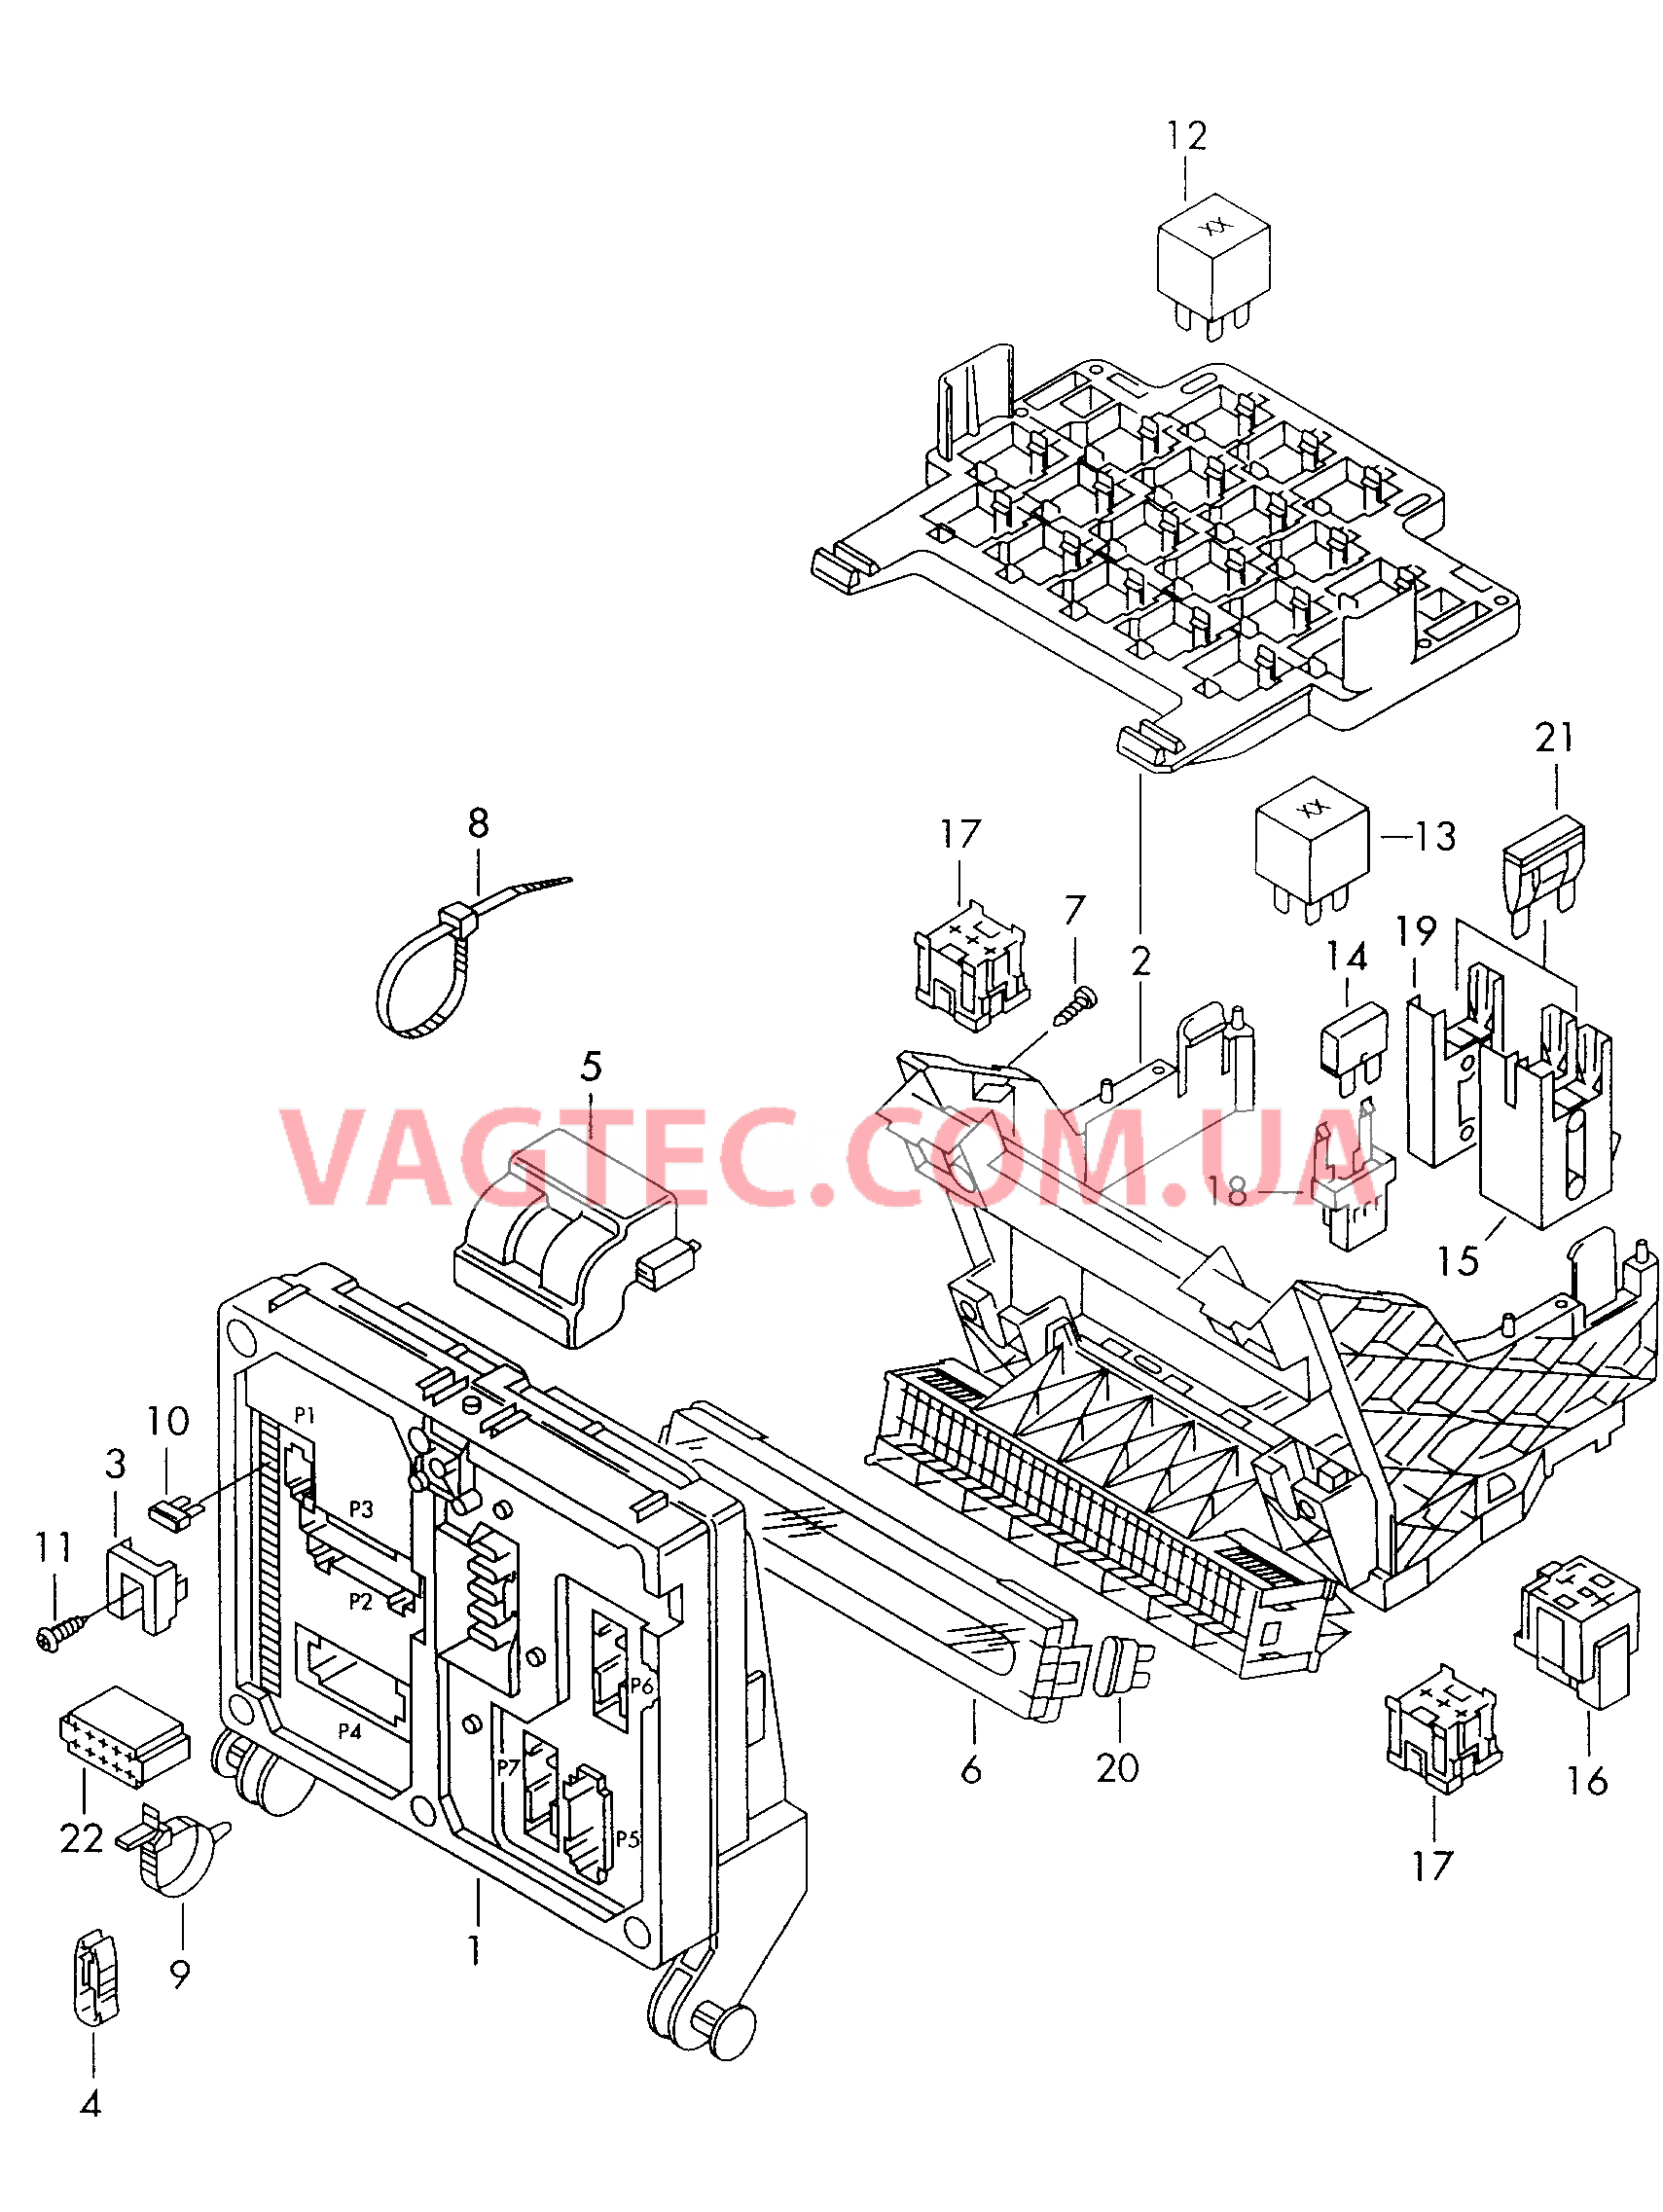 Коммутац. бл., гнездо предохранителя, колодка реле и реле  Центральный блок управления  для SEAT Alhambra 2001